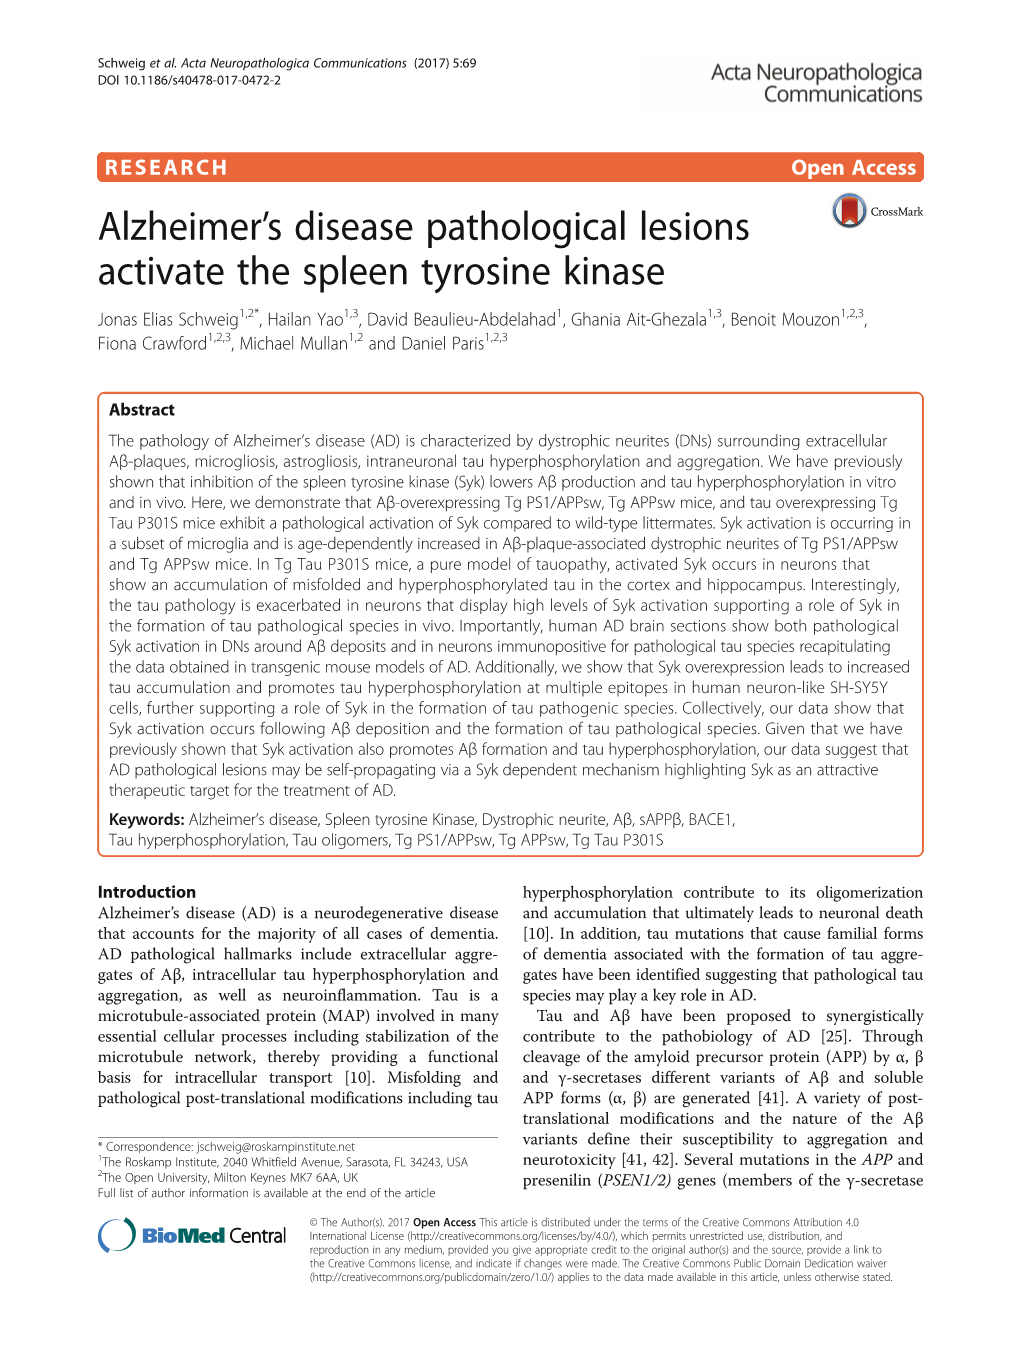 Alzheimer's Disease Pathological Lesions Activate the Spleen Tyrosine